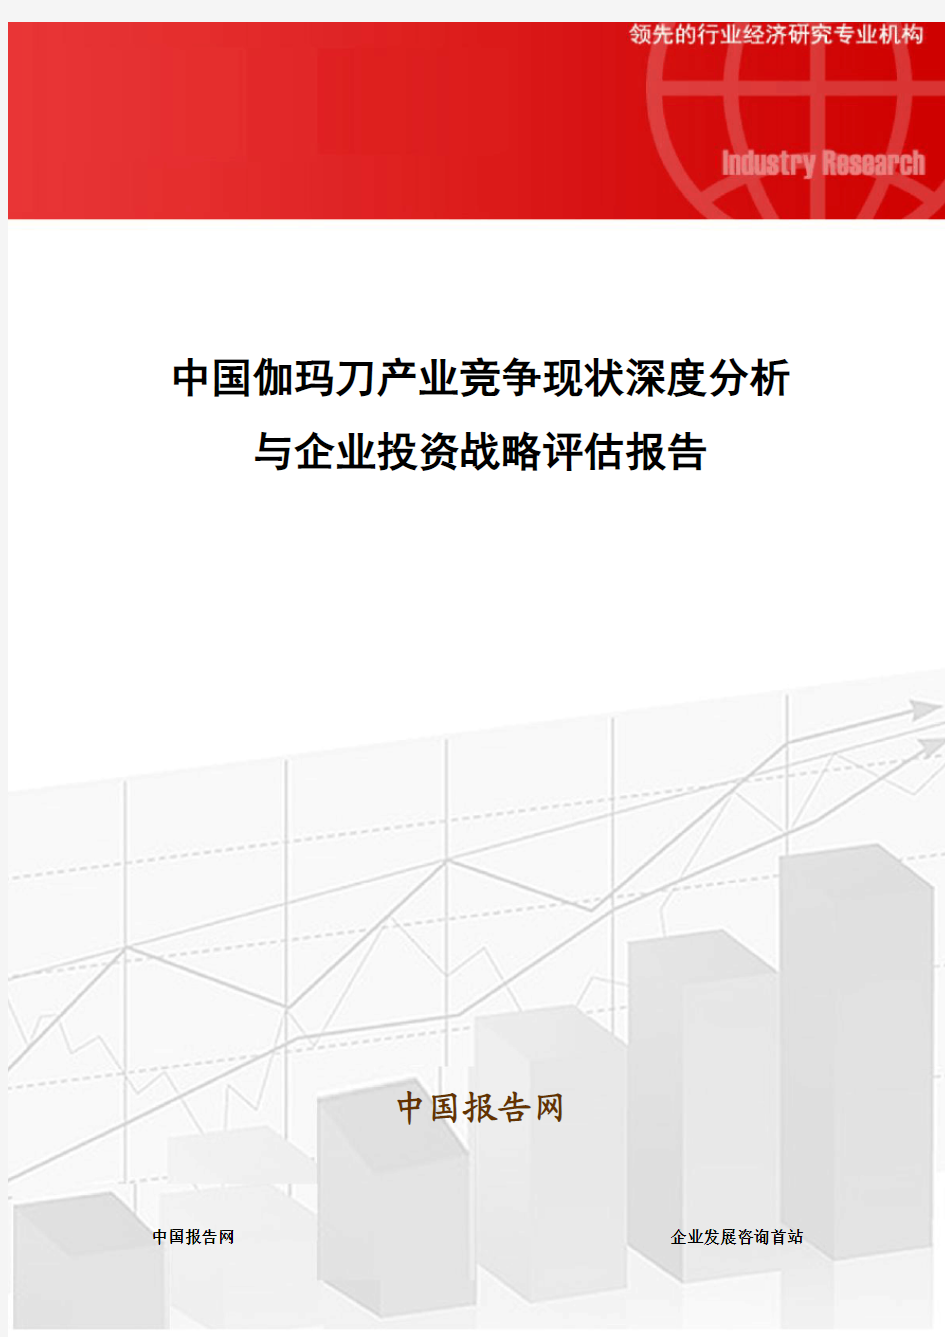 中国伽玛刀产业竞争现状深度分析与企业投资战略评估报告